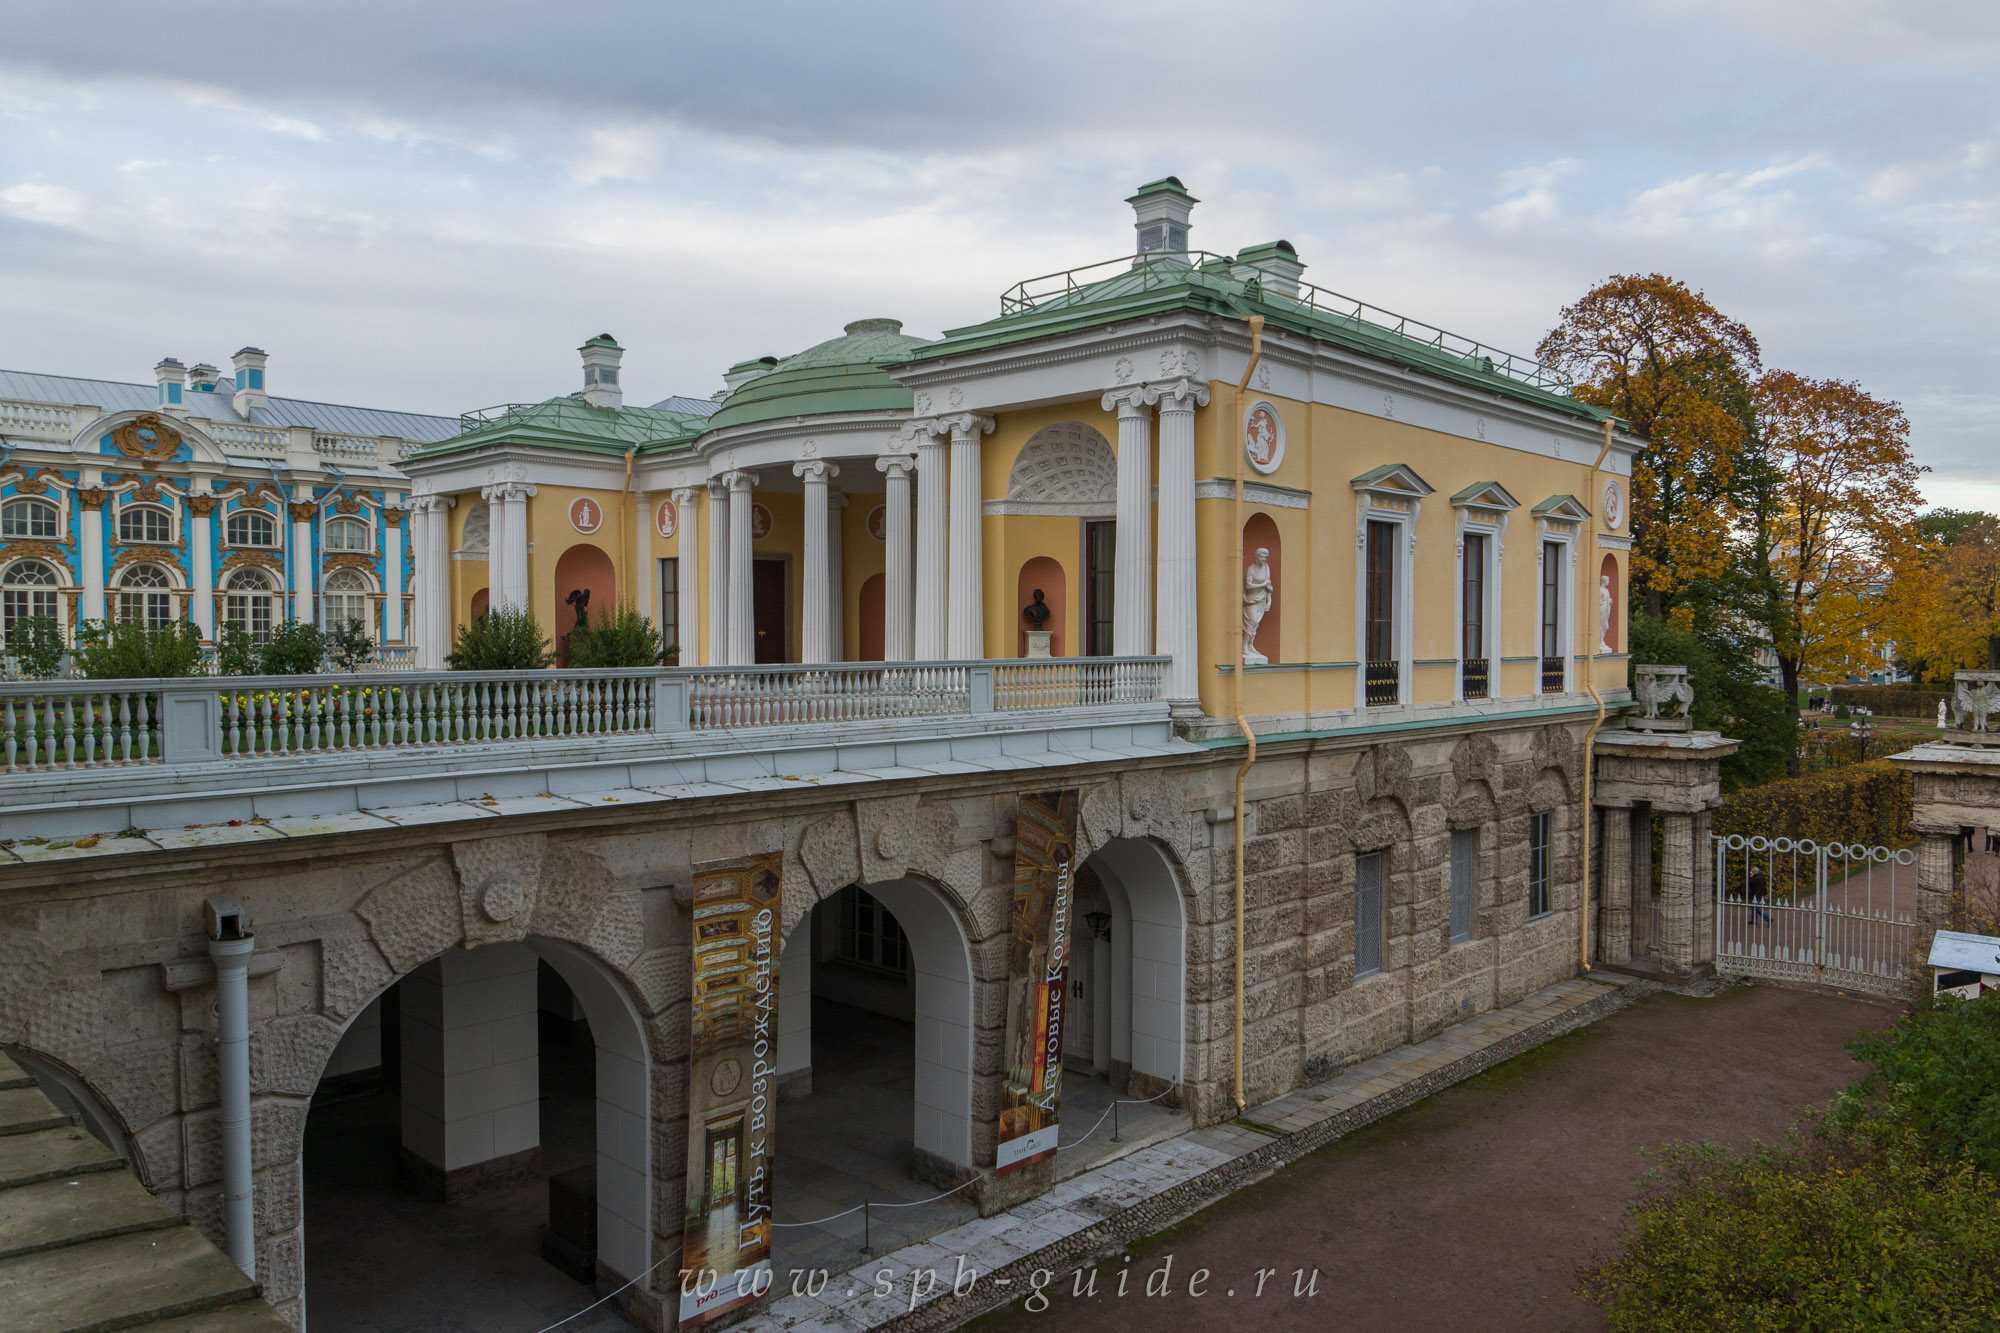 Царское село в санкт-петербурге — фото, екатерининский дворец, как добраться